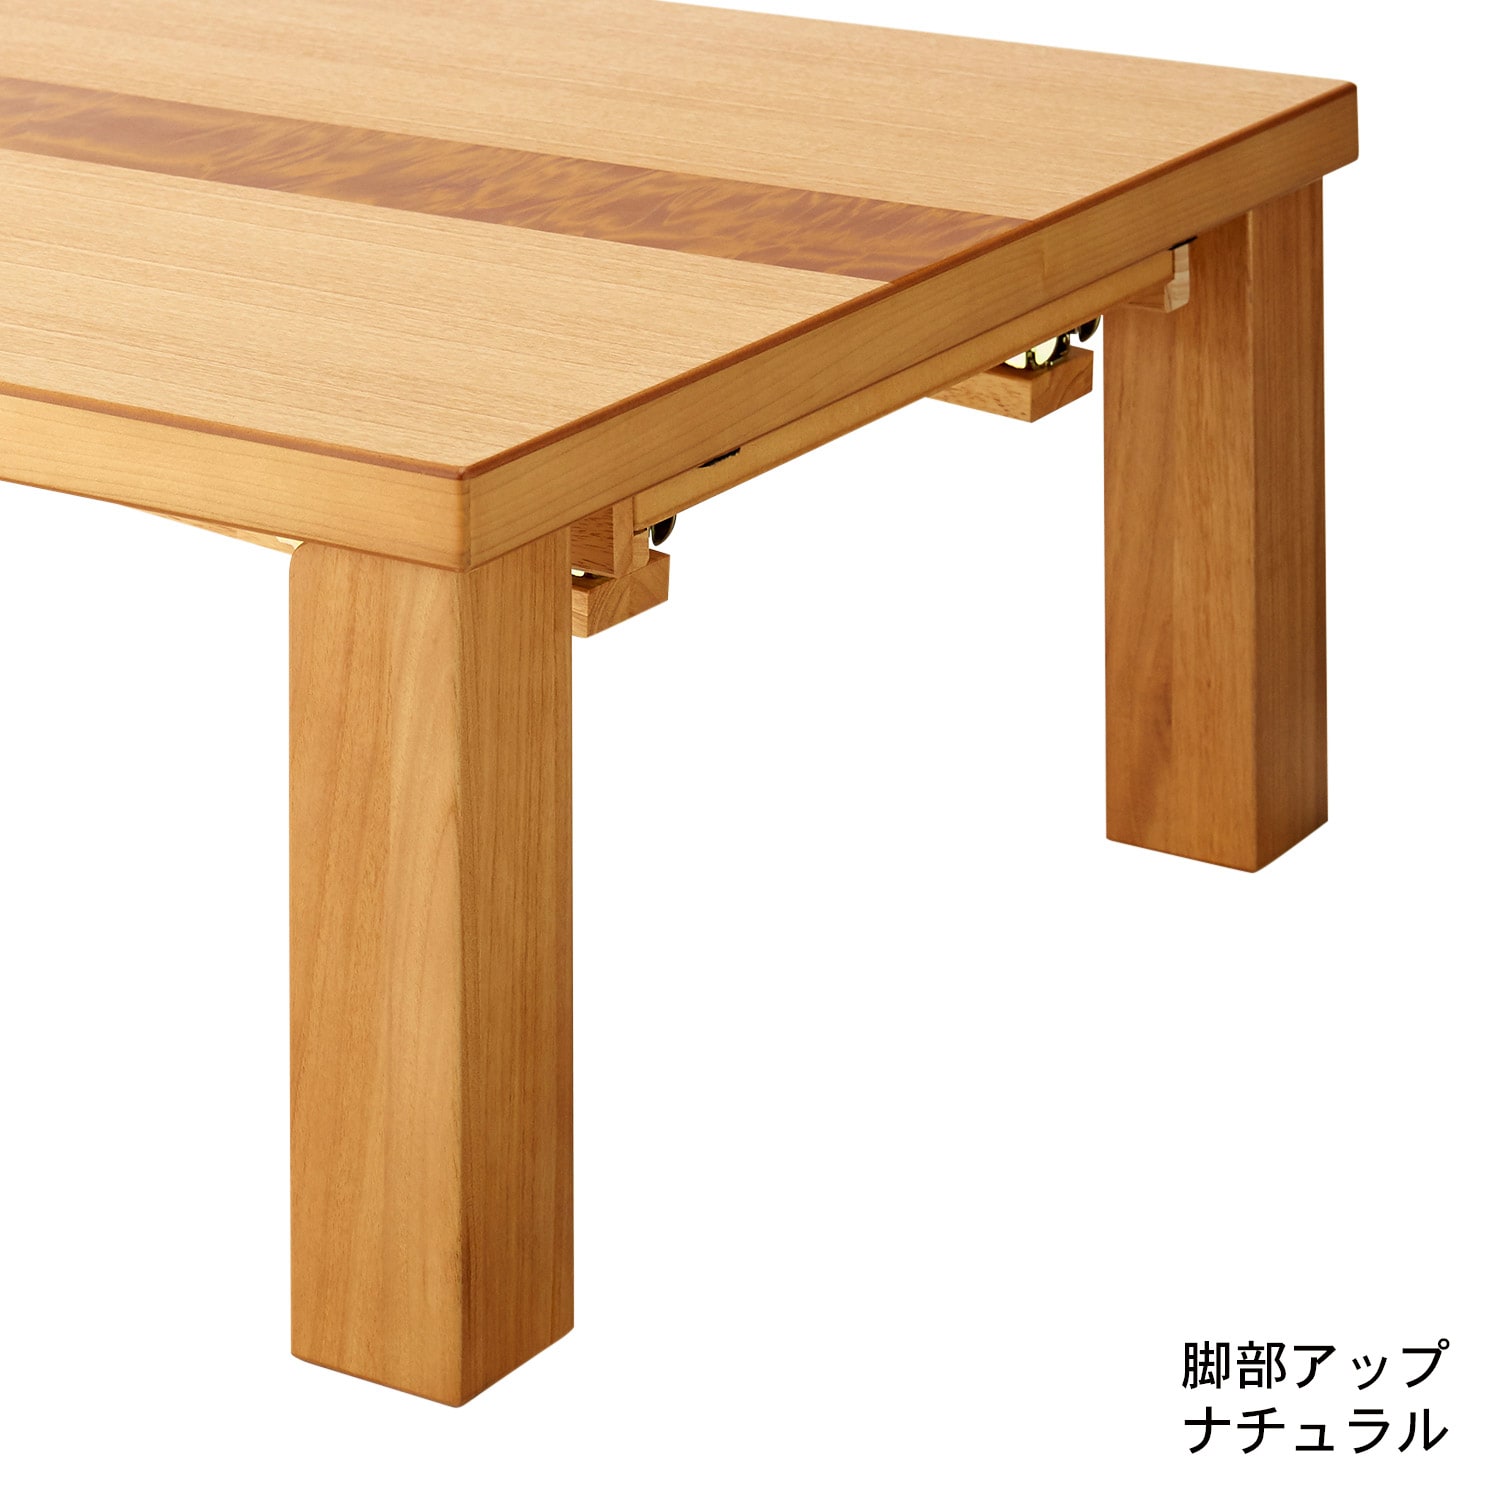 【日本製】天板裏に収納できる折れ脚親子テーブル